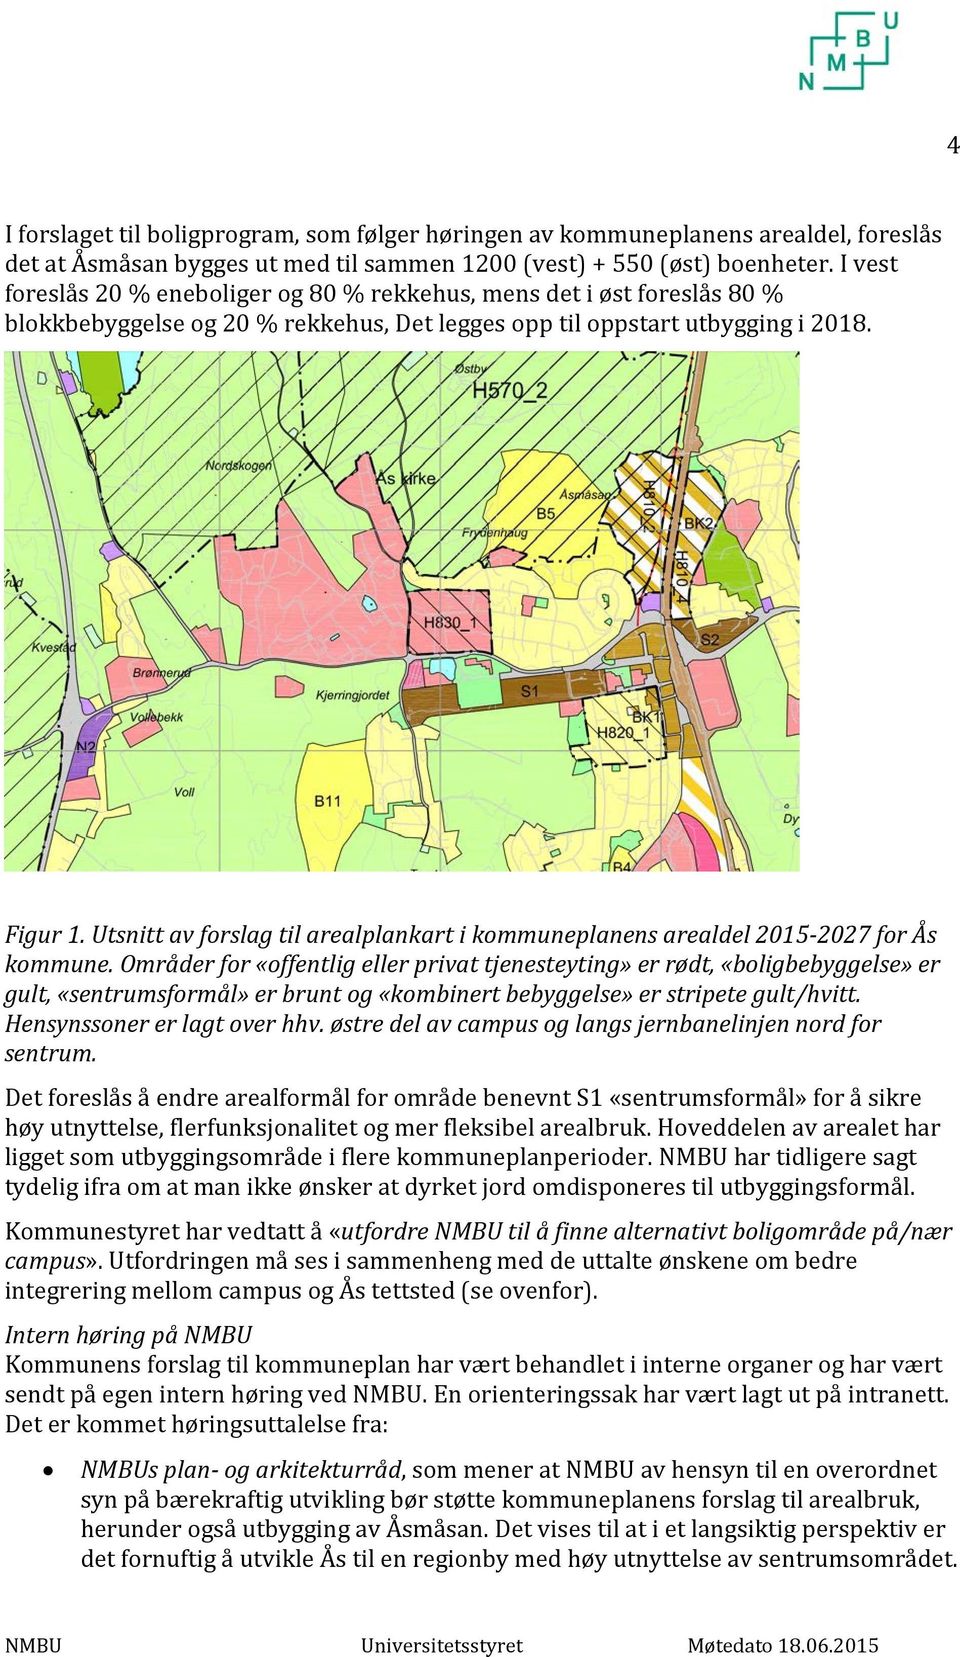 Utsnitt av forslag til arealplankart i kommuneplanens arealdel 2015-2027 for Ås kommune.